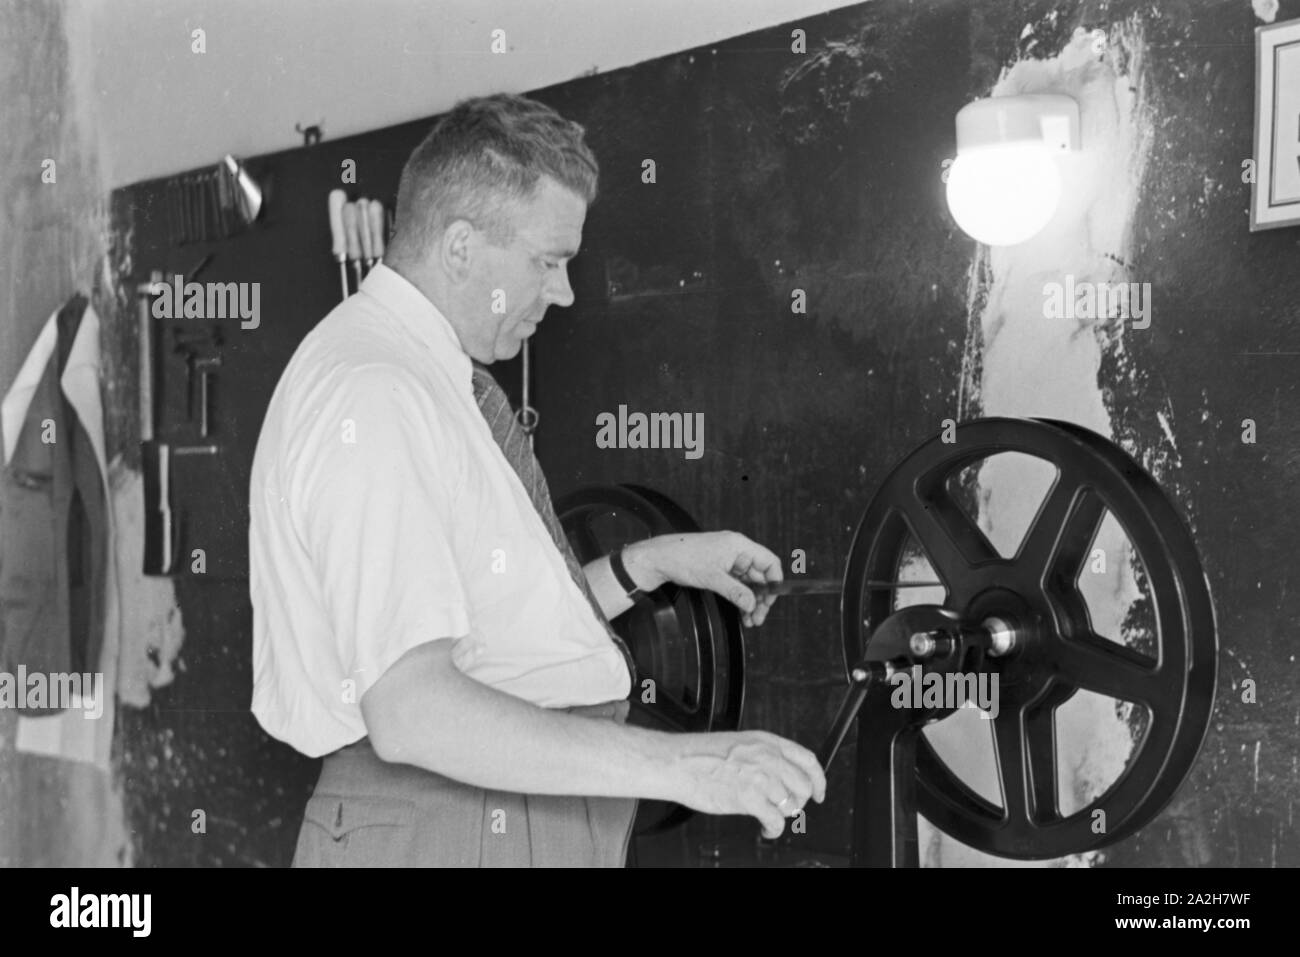 Mitarbeiter der Wetterdienststelle beim Einlegen eines Films, Deutschland 1930er Jahre. Staff member of a meteorological office inserting a film, Germany 1930s. Stock Photo